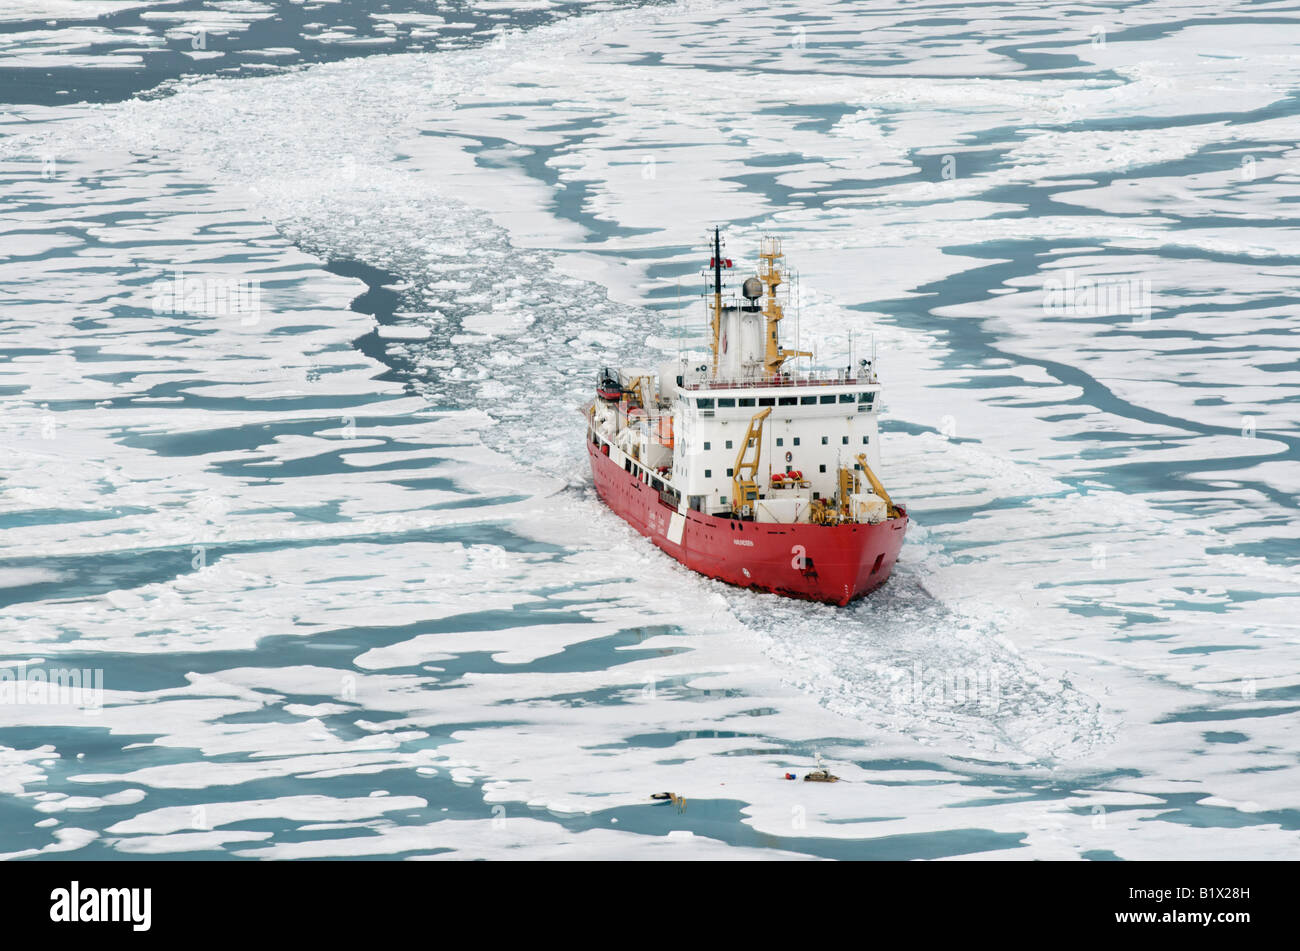 CCGS Amundsen Schiff der kanadischen Küstenwache Icebreaker und Arktisforschung.  Gesehen im Amundsen Golf.  Frühling Zeit Eis. Stockfoto